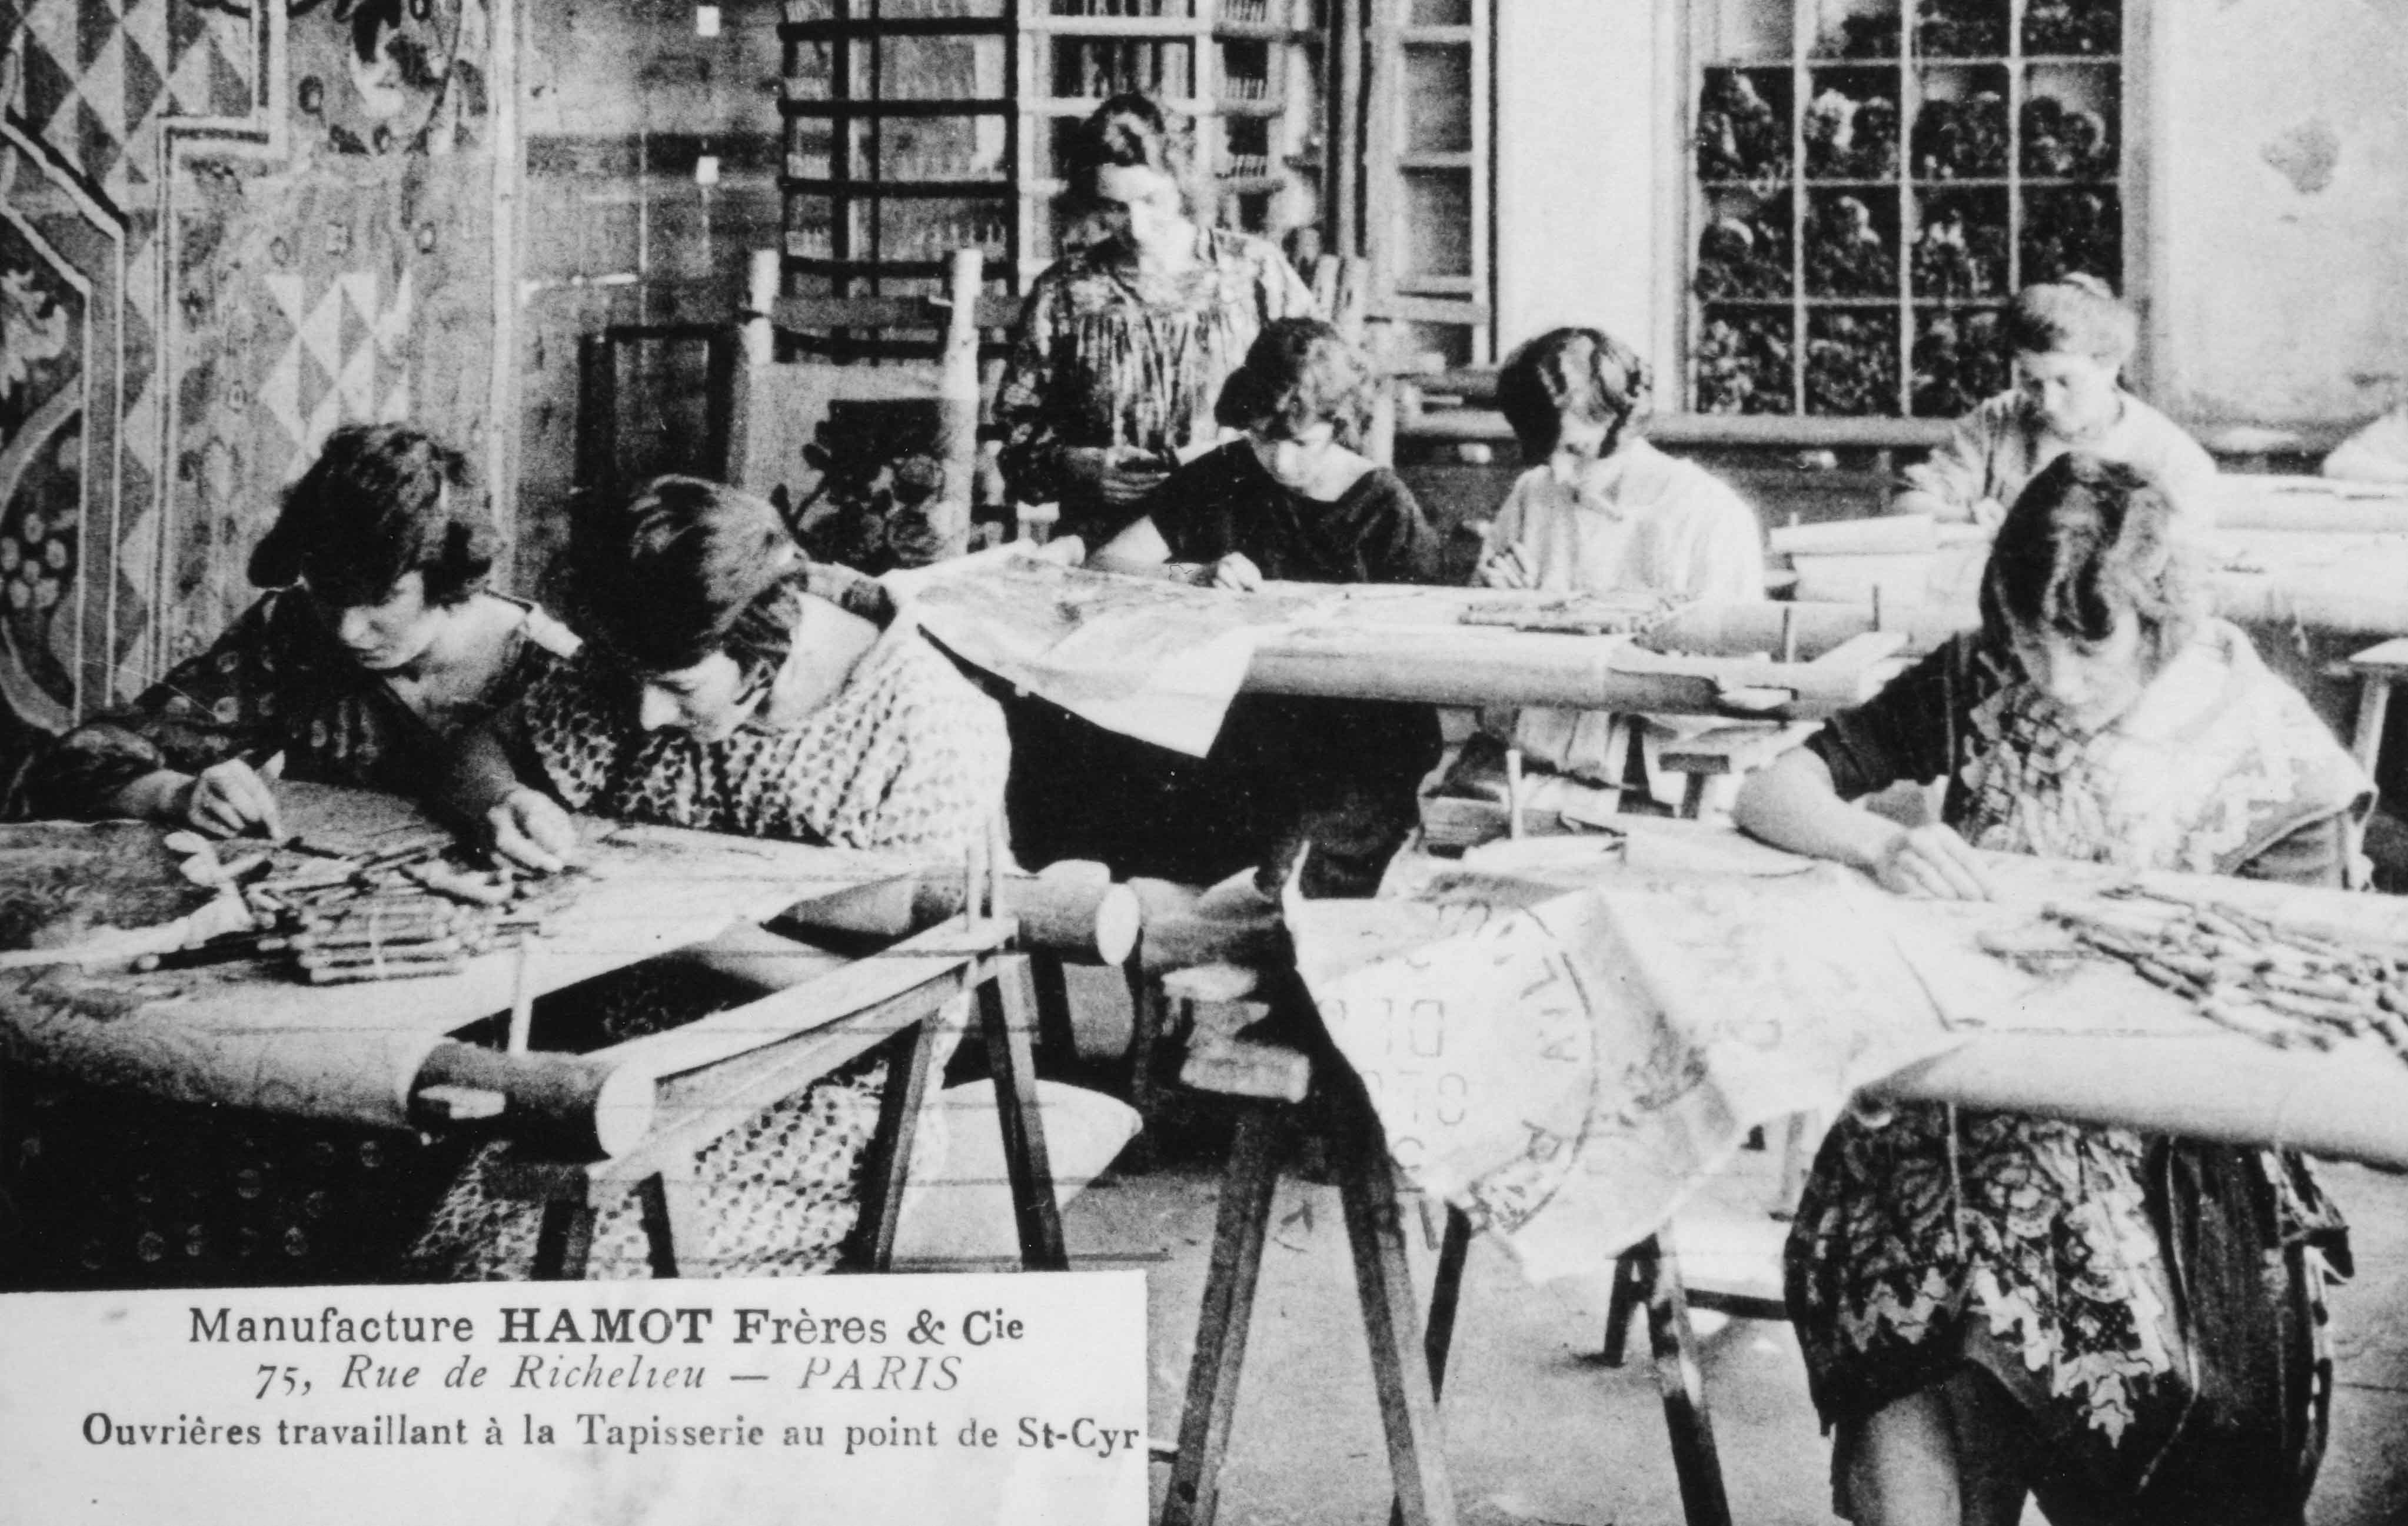 Carte postale (1er quart 20e siècle) : ouvrières travaillant à la tapisserie au point de Saint-Cyr (Aubusson, centre de documentation du musée départemental de la Tapisserie)